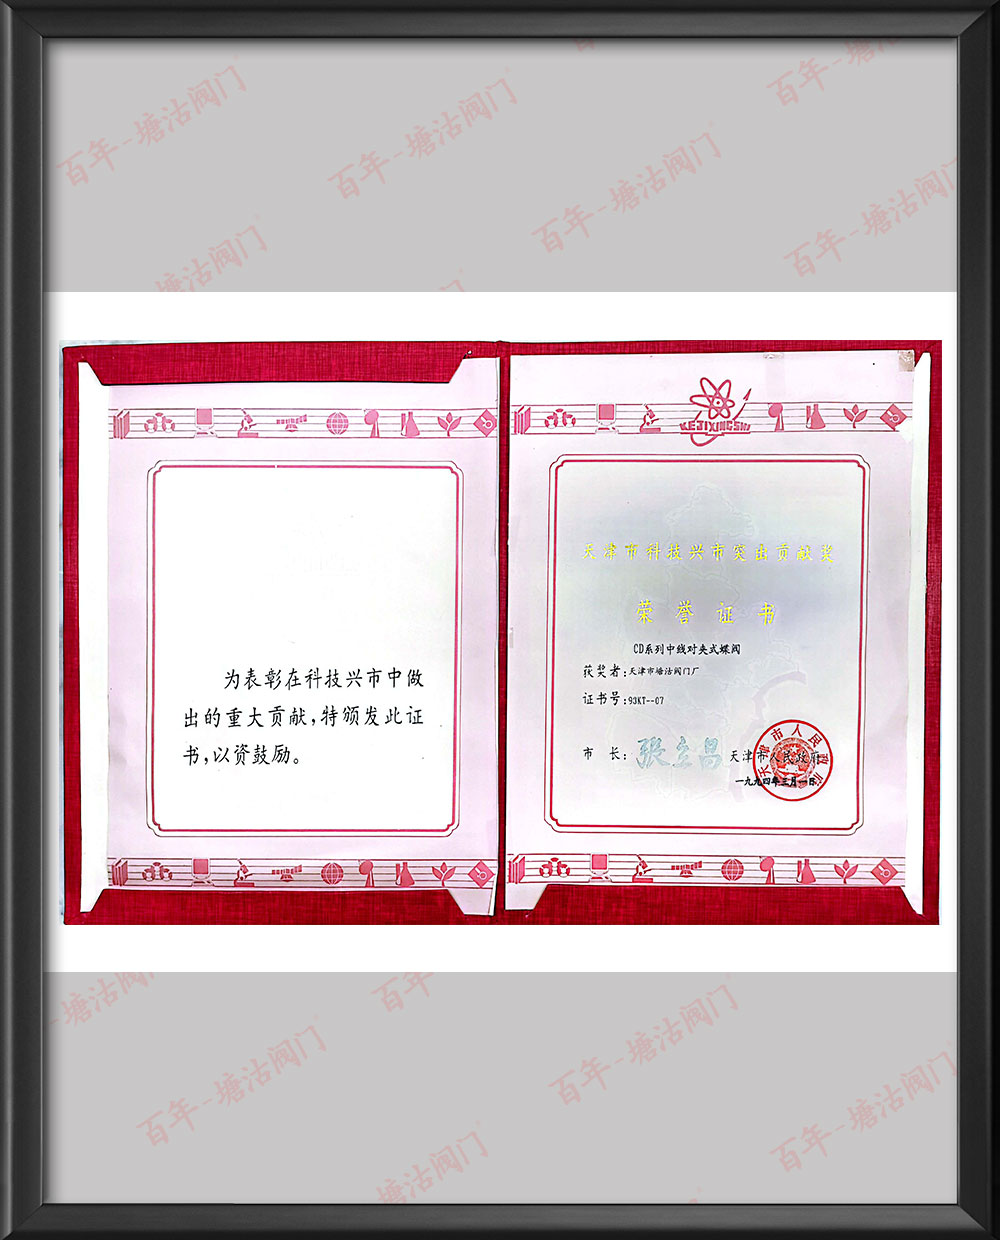 1994年天津市科技興市突出貢獻獎榮譽證書